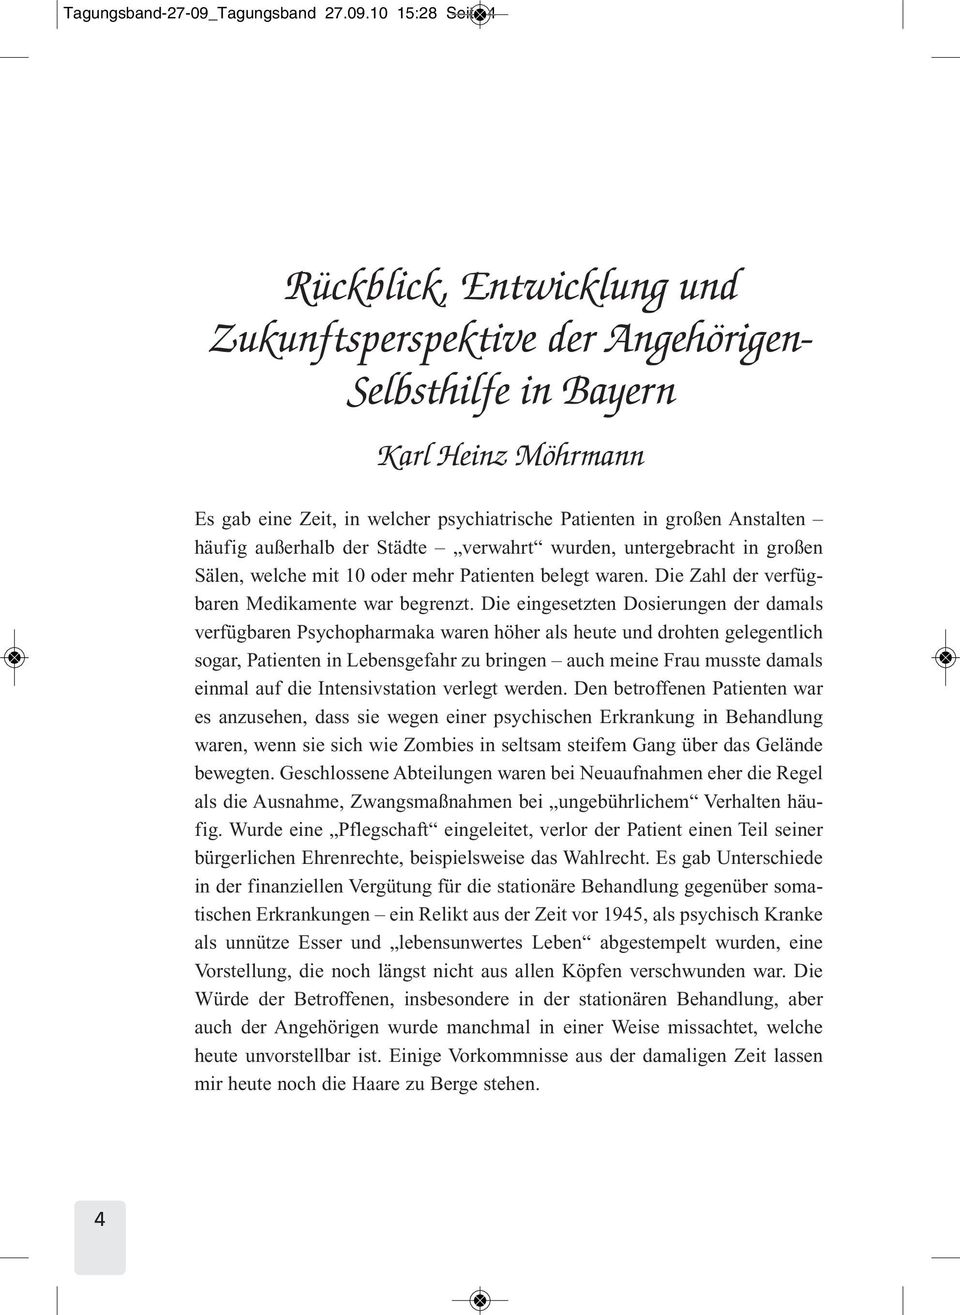 10 15:28 Seite 4 Rückblick, Entwicklung und Zukunftsperspektive der Angehörigen- Selbsthilfe in Bayern Karl Heinz Möhrmann Es gab eine Zeit, in welcher psychiatrische Patienten in großen Anstalten